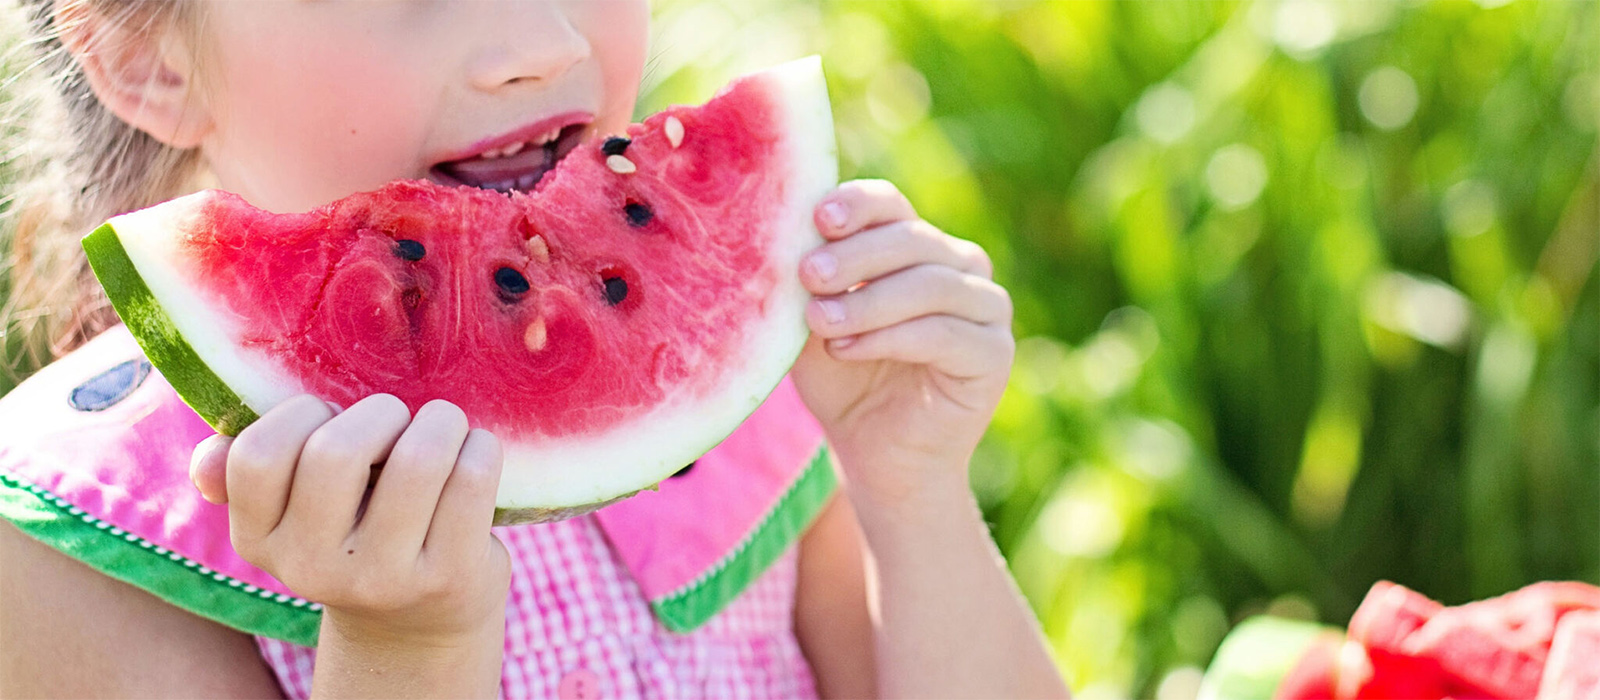 En närbild på en flicka som äter en vattenmelon.